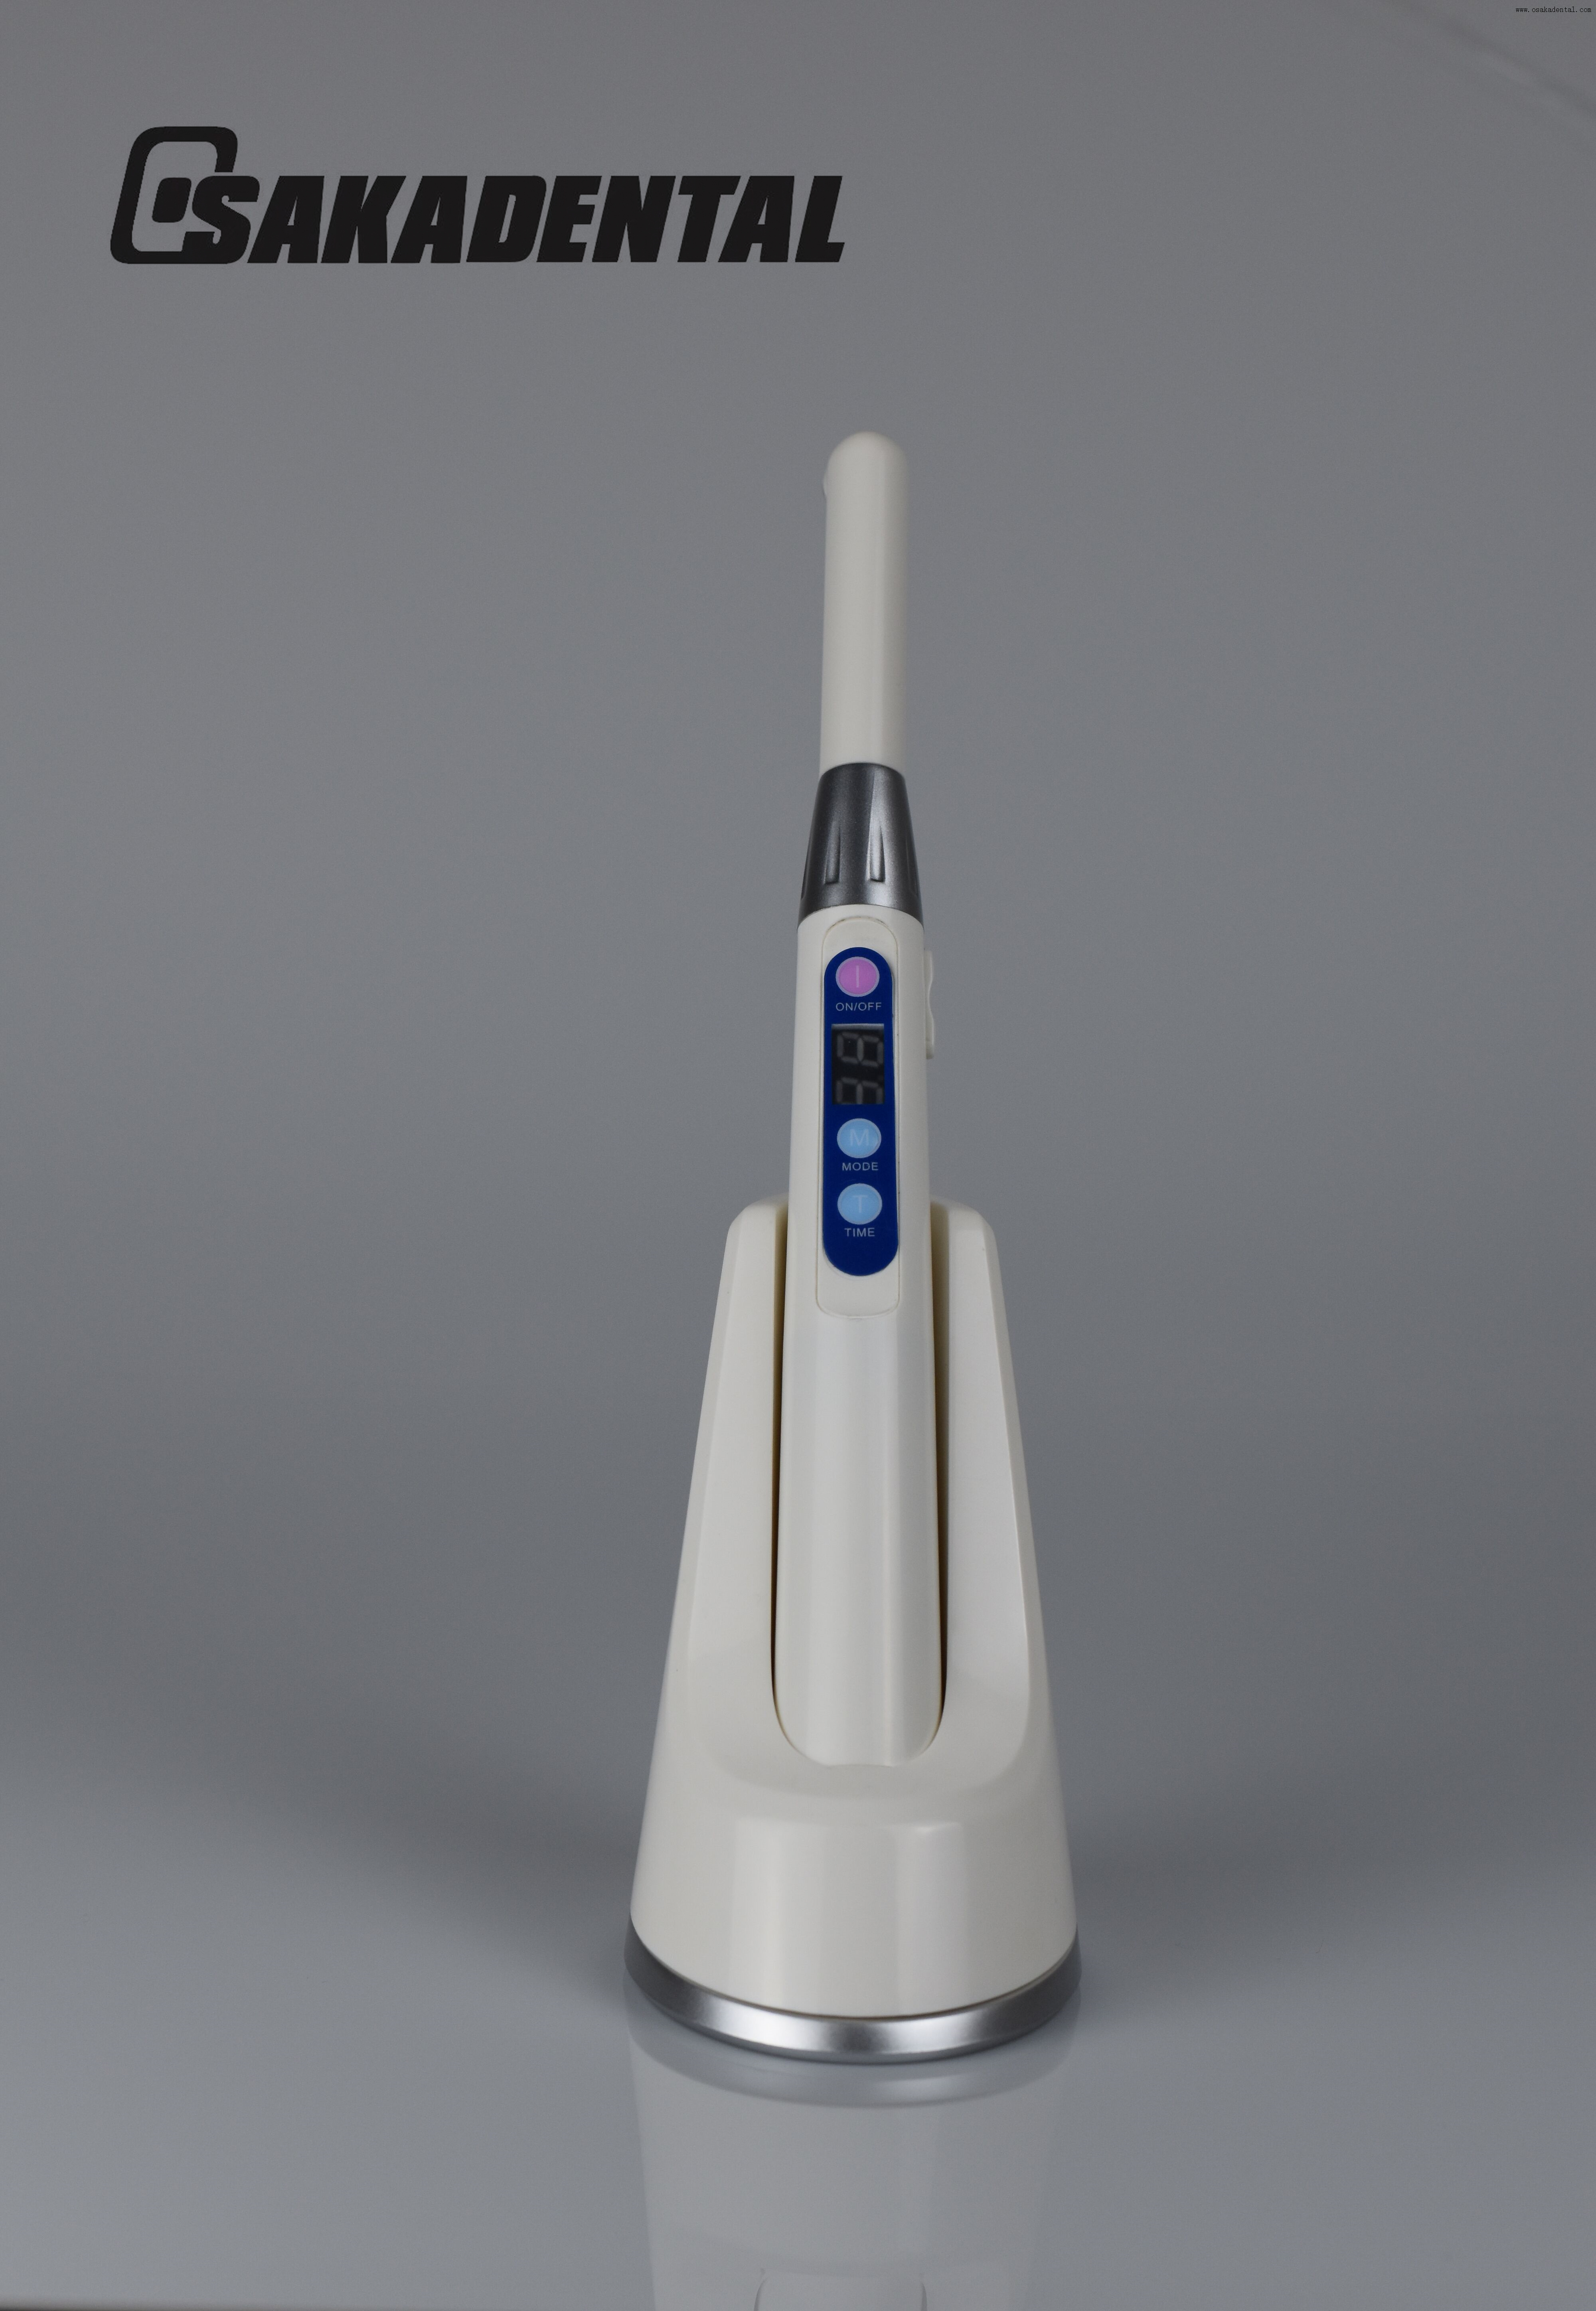 Une seconde lampe à polymériser dentaire 2700 mw/cm pour unité dentaire